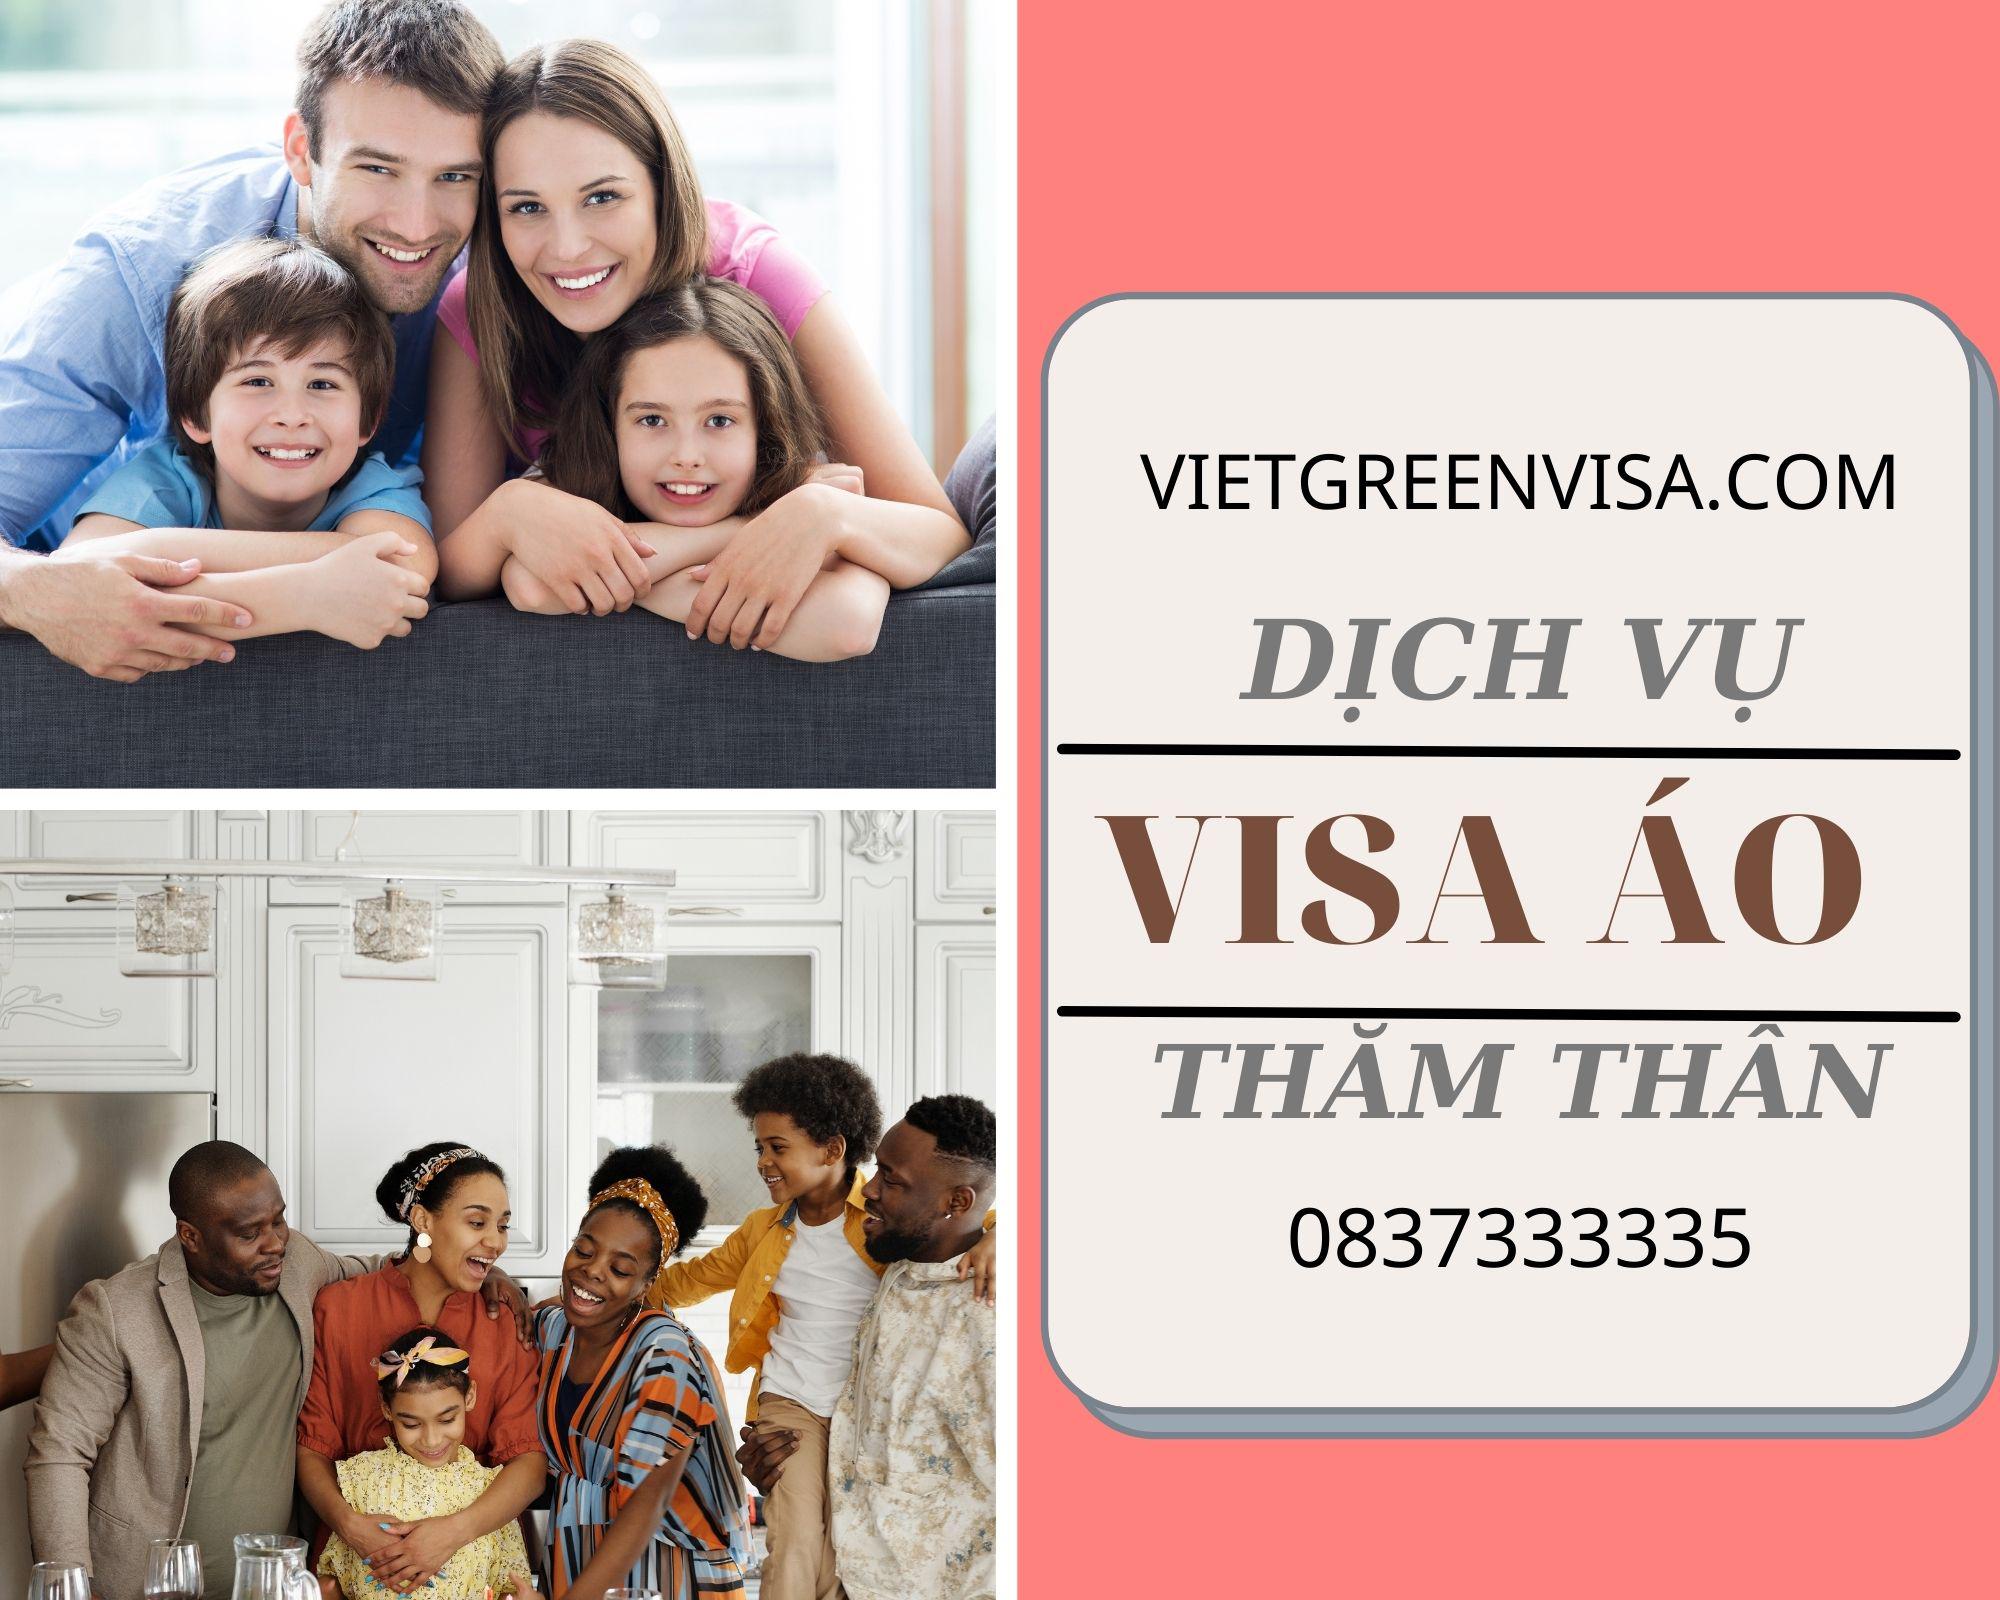 Dịch vụ tư vấn visa đi Áo diện thăm thân uy tín